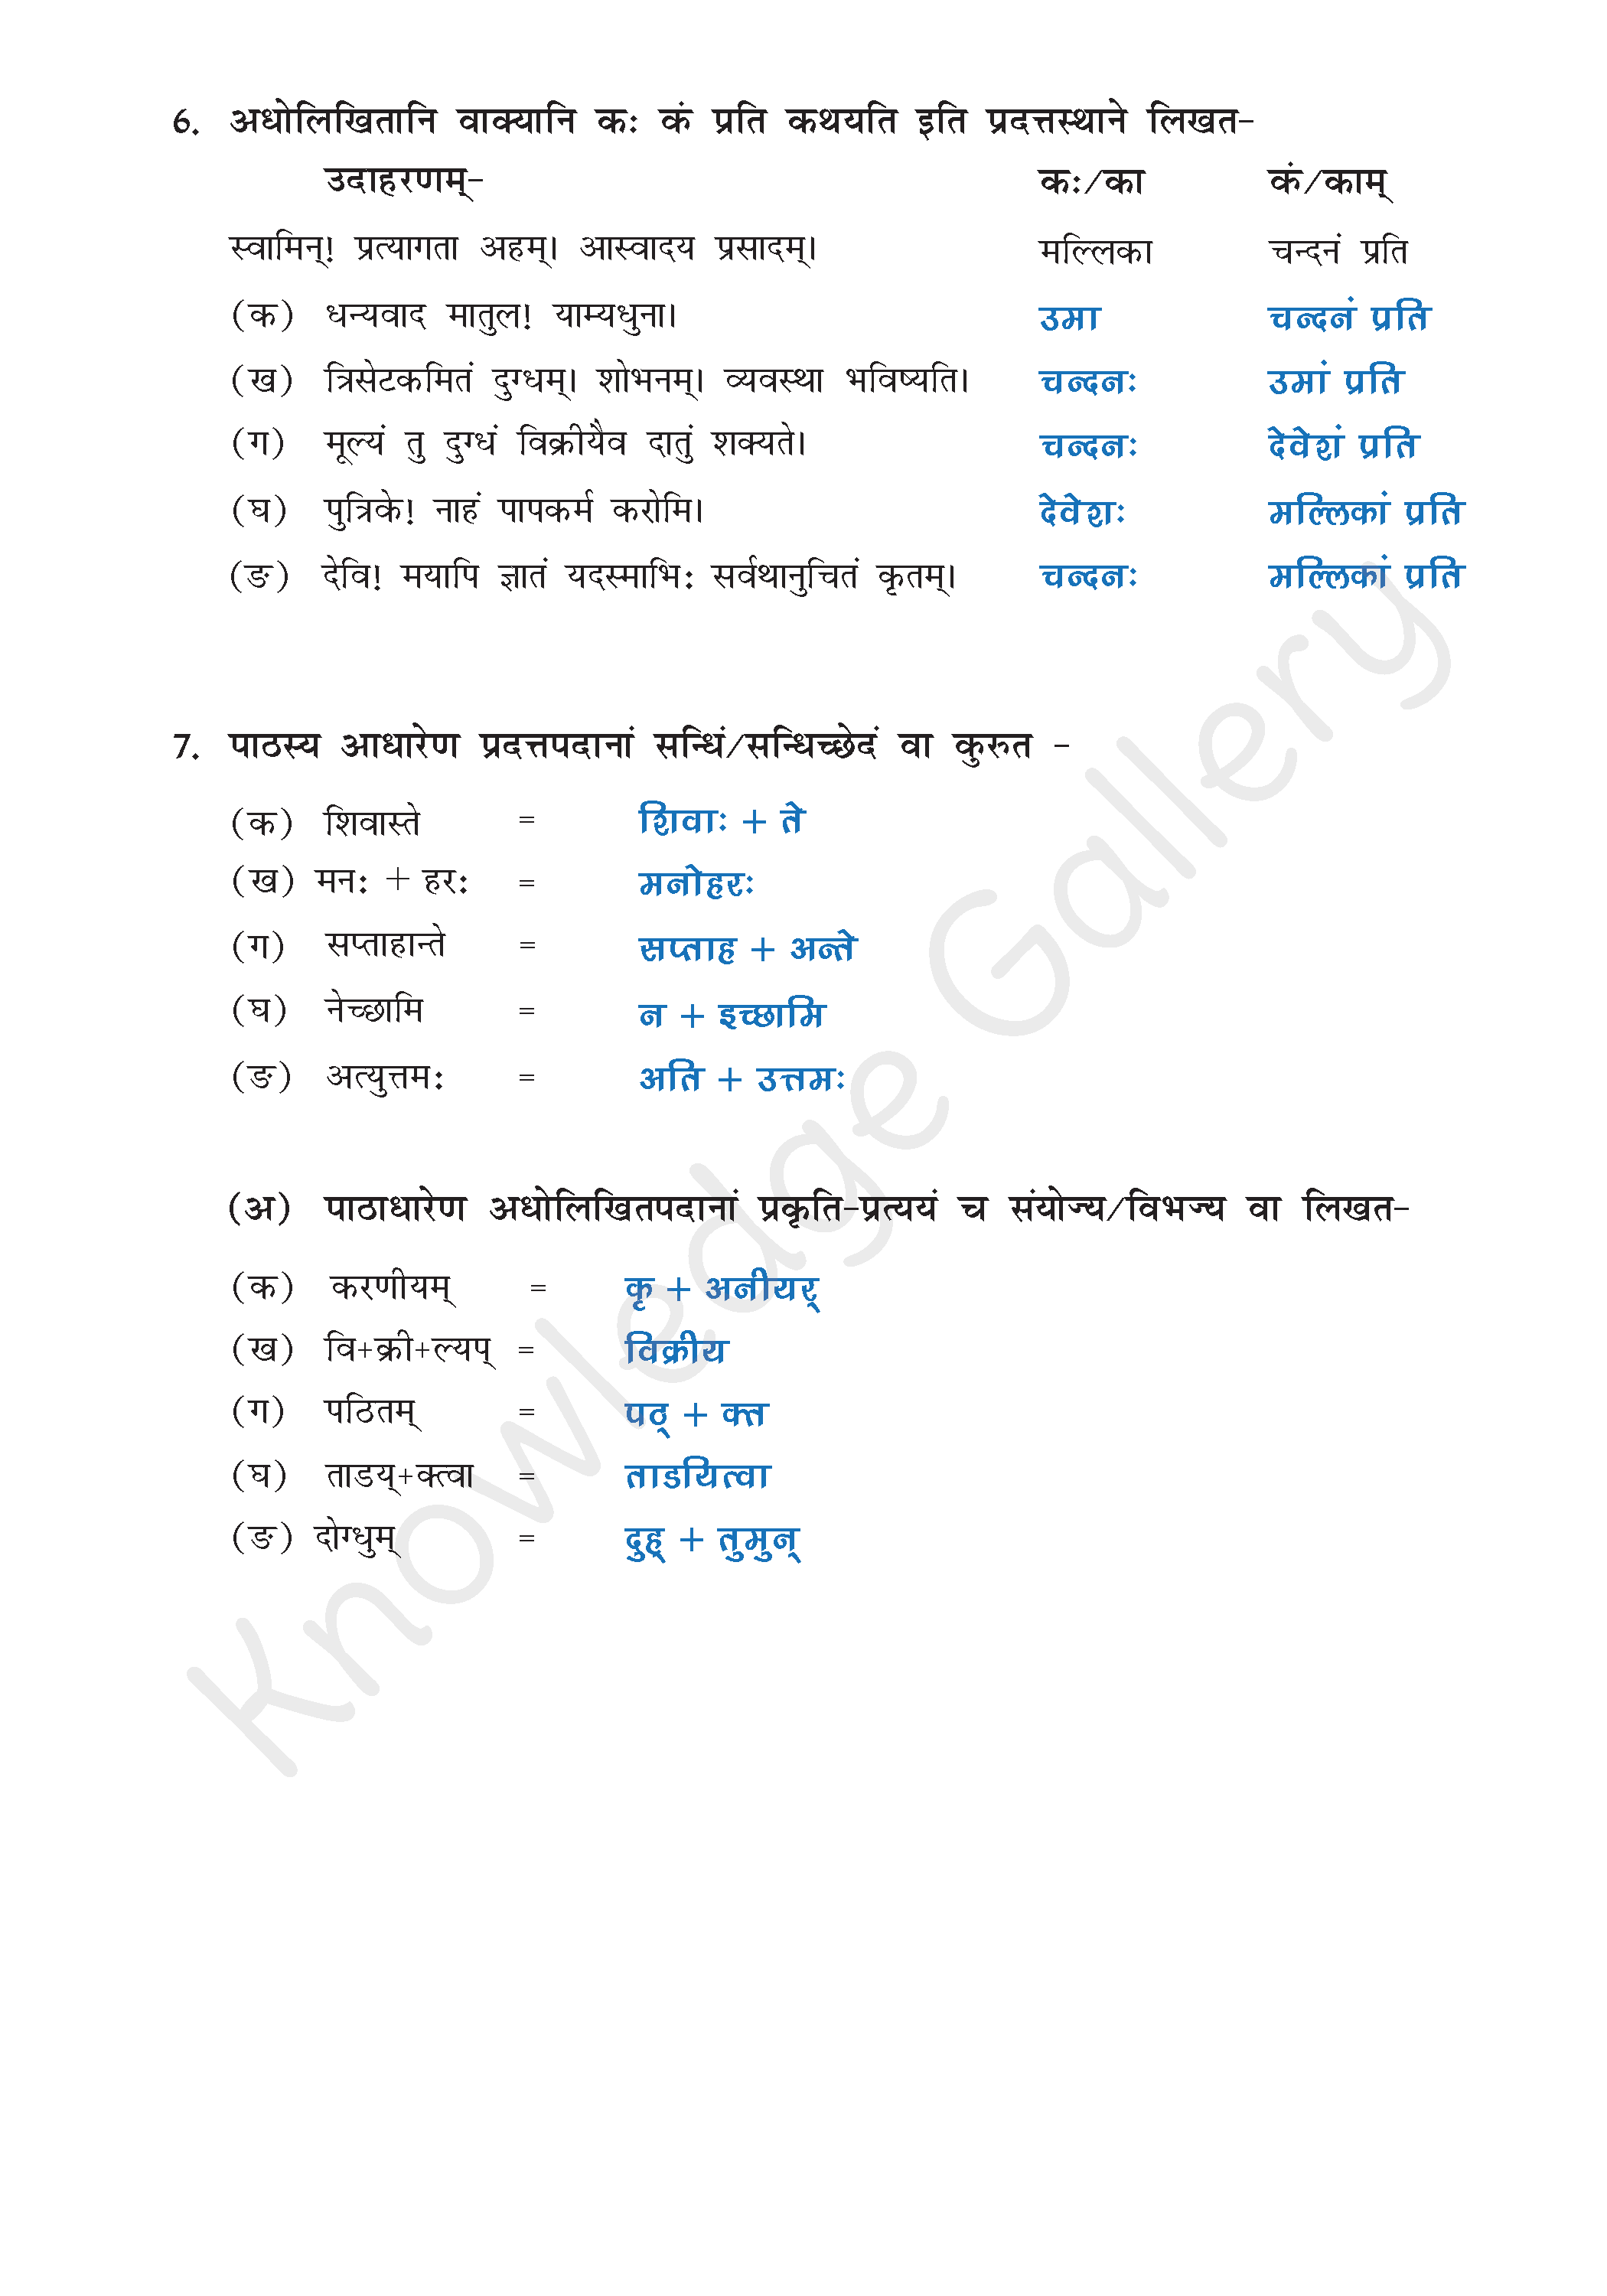 NCERT Solution For Class 9 Sanskrit Chapter 3 part 12